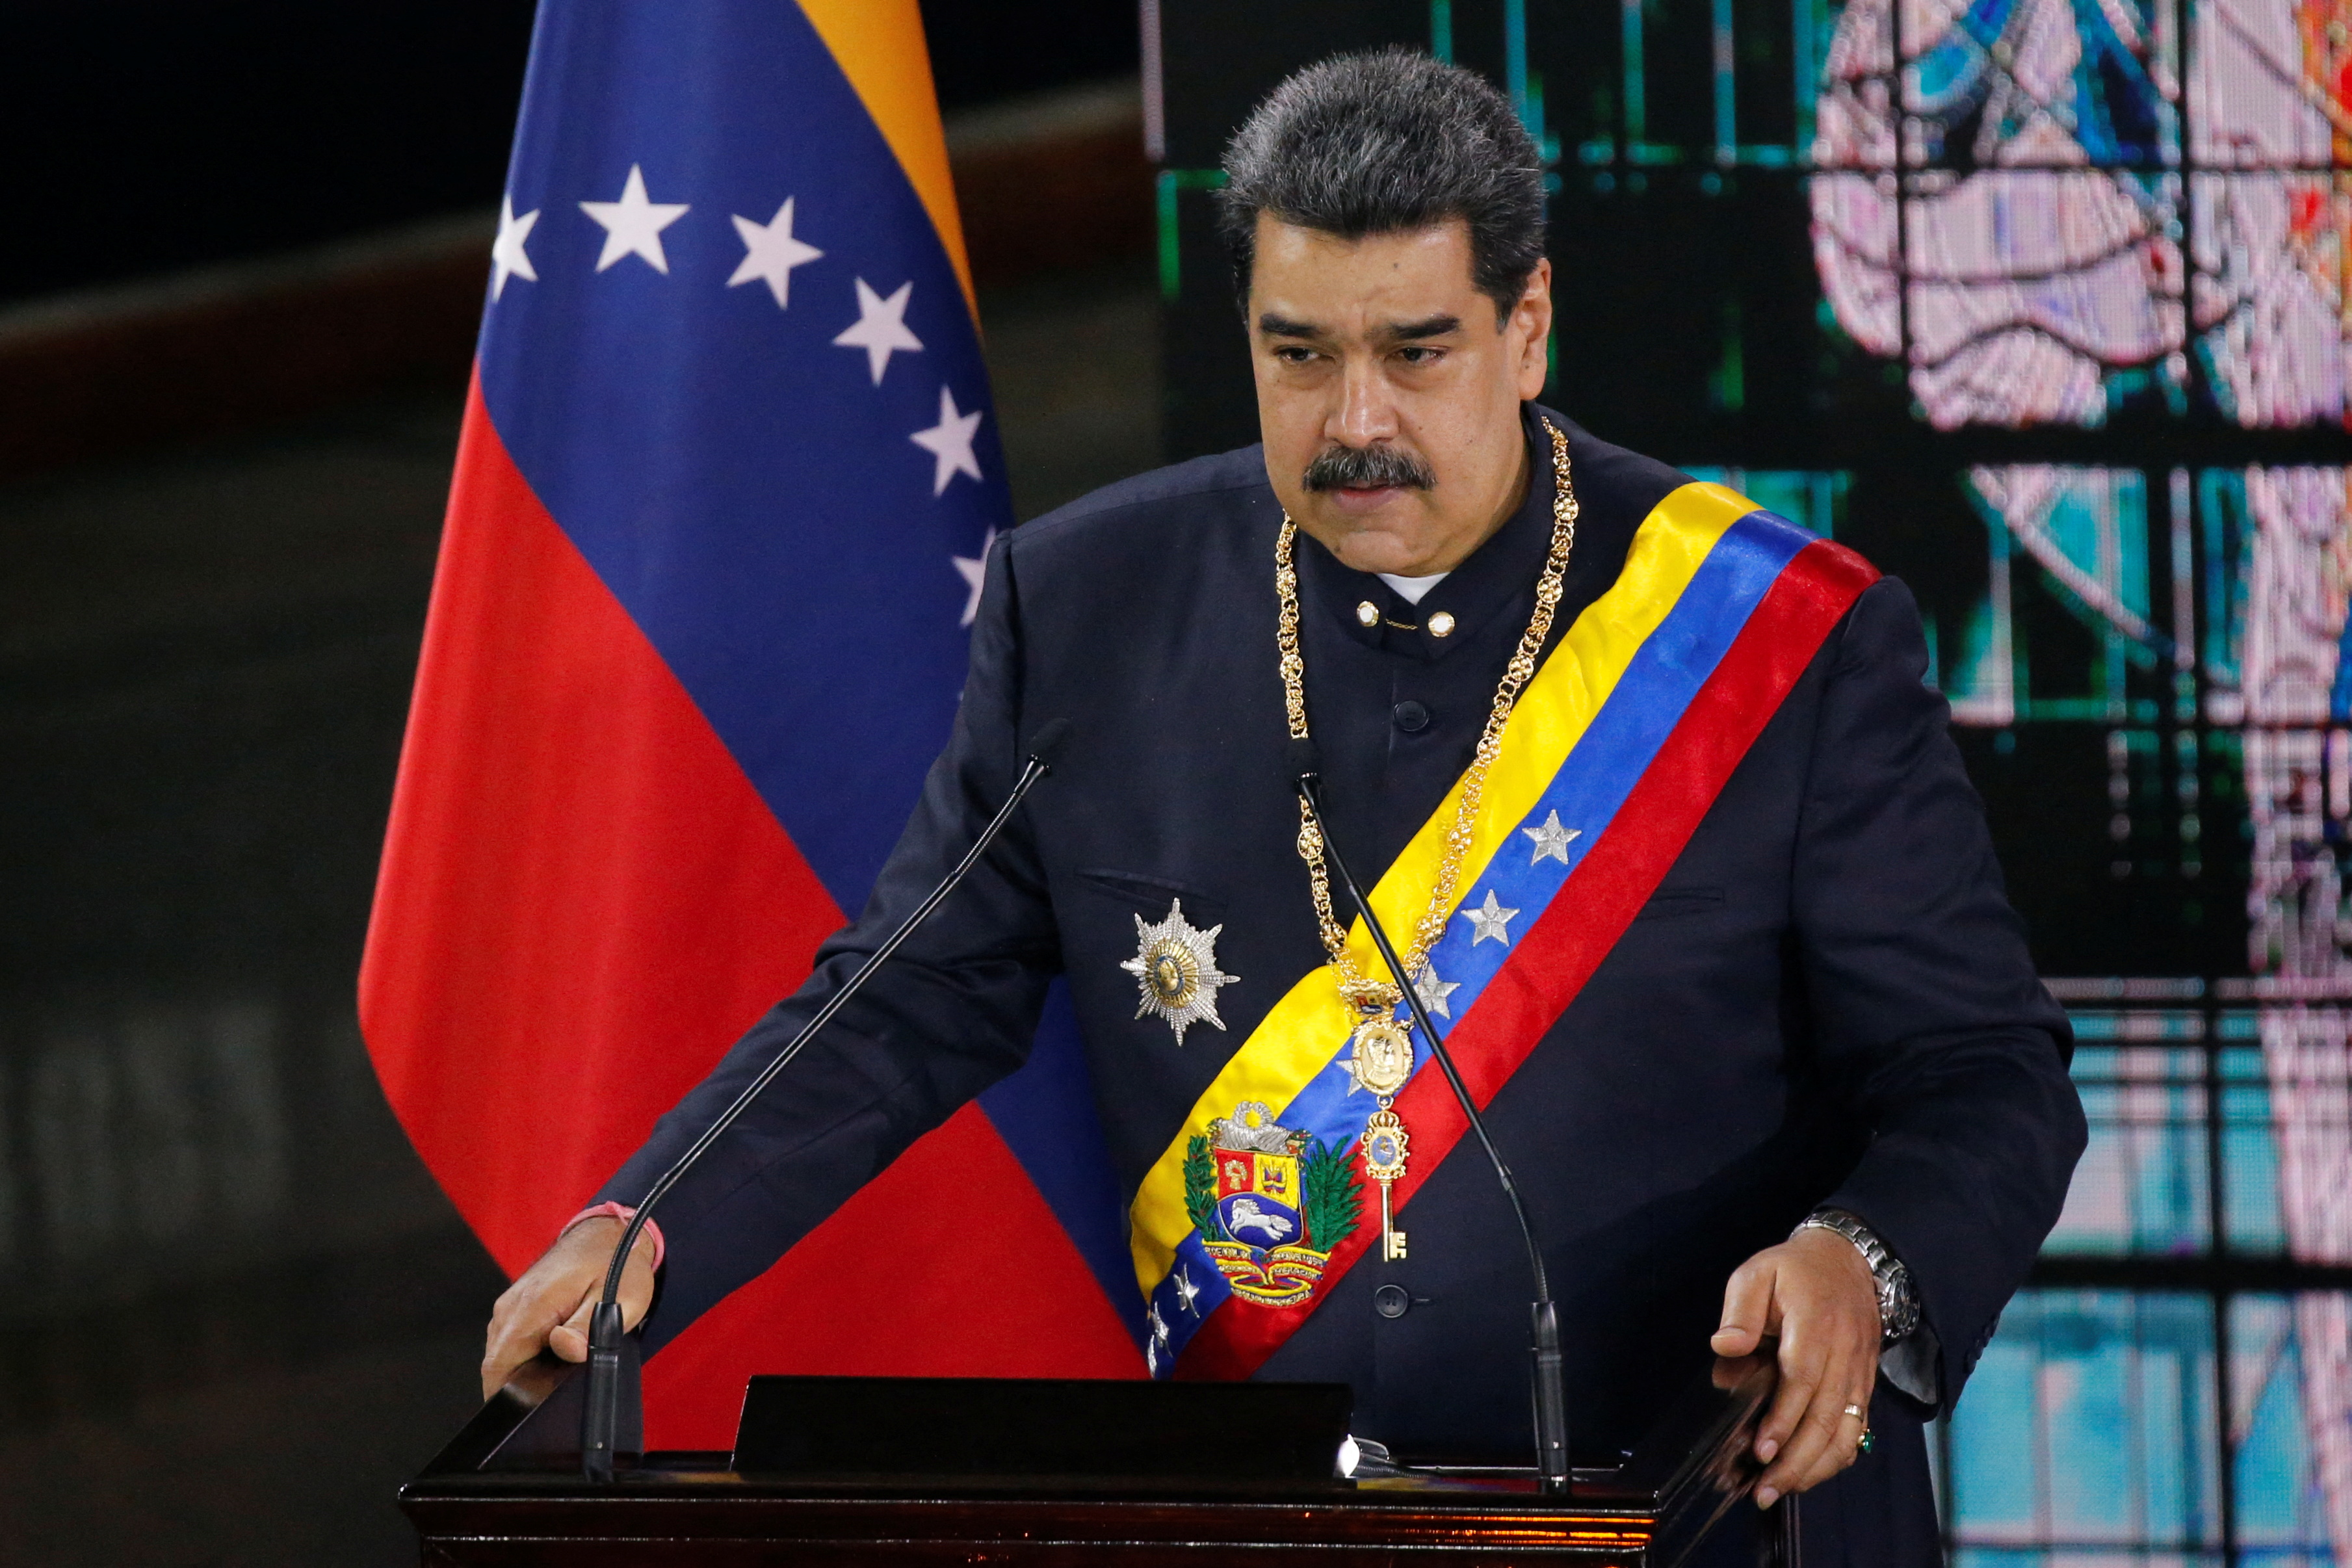 El dictador de Venezuela Nicolás Maduro habla durante una ceremonia que marca la apertura del nuevo período judicial, en Caracas, Venezuela 27 de enero de 2022. REUTERS/Leonardo Fernández Viloria